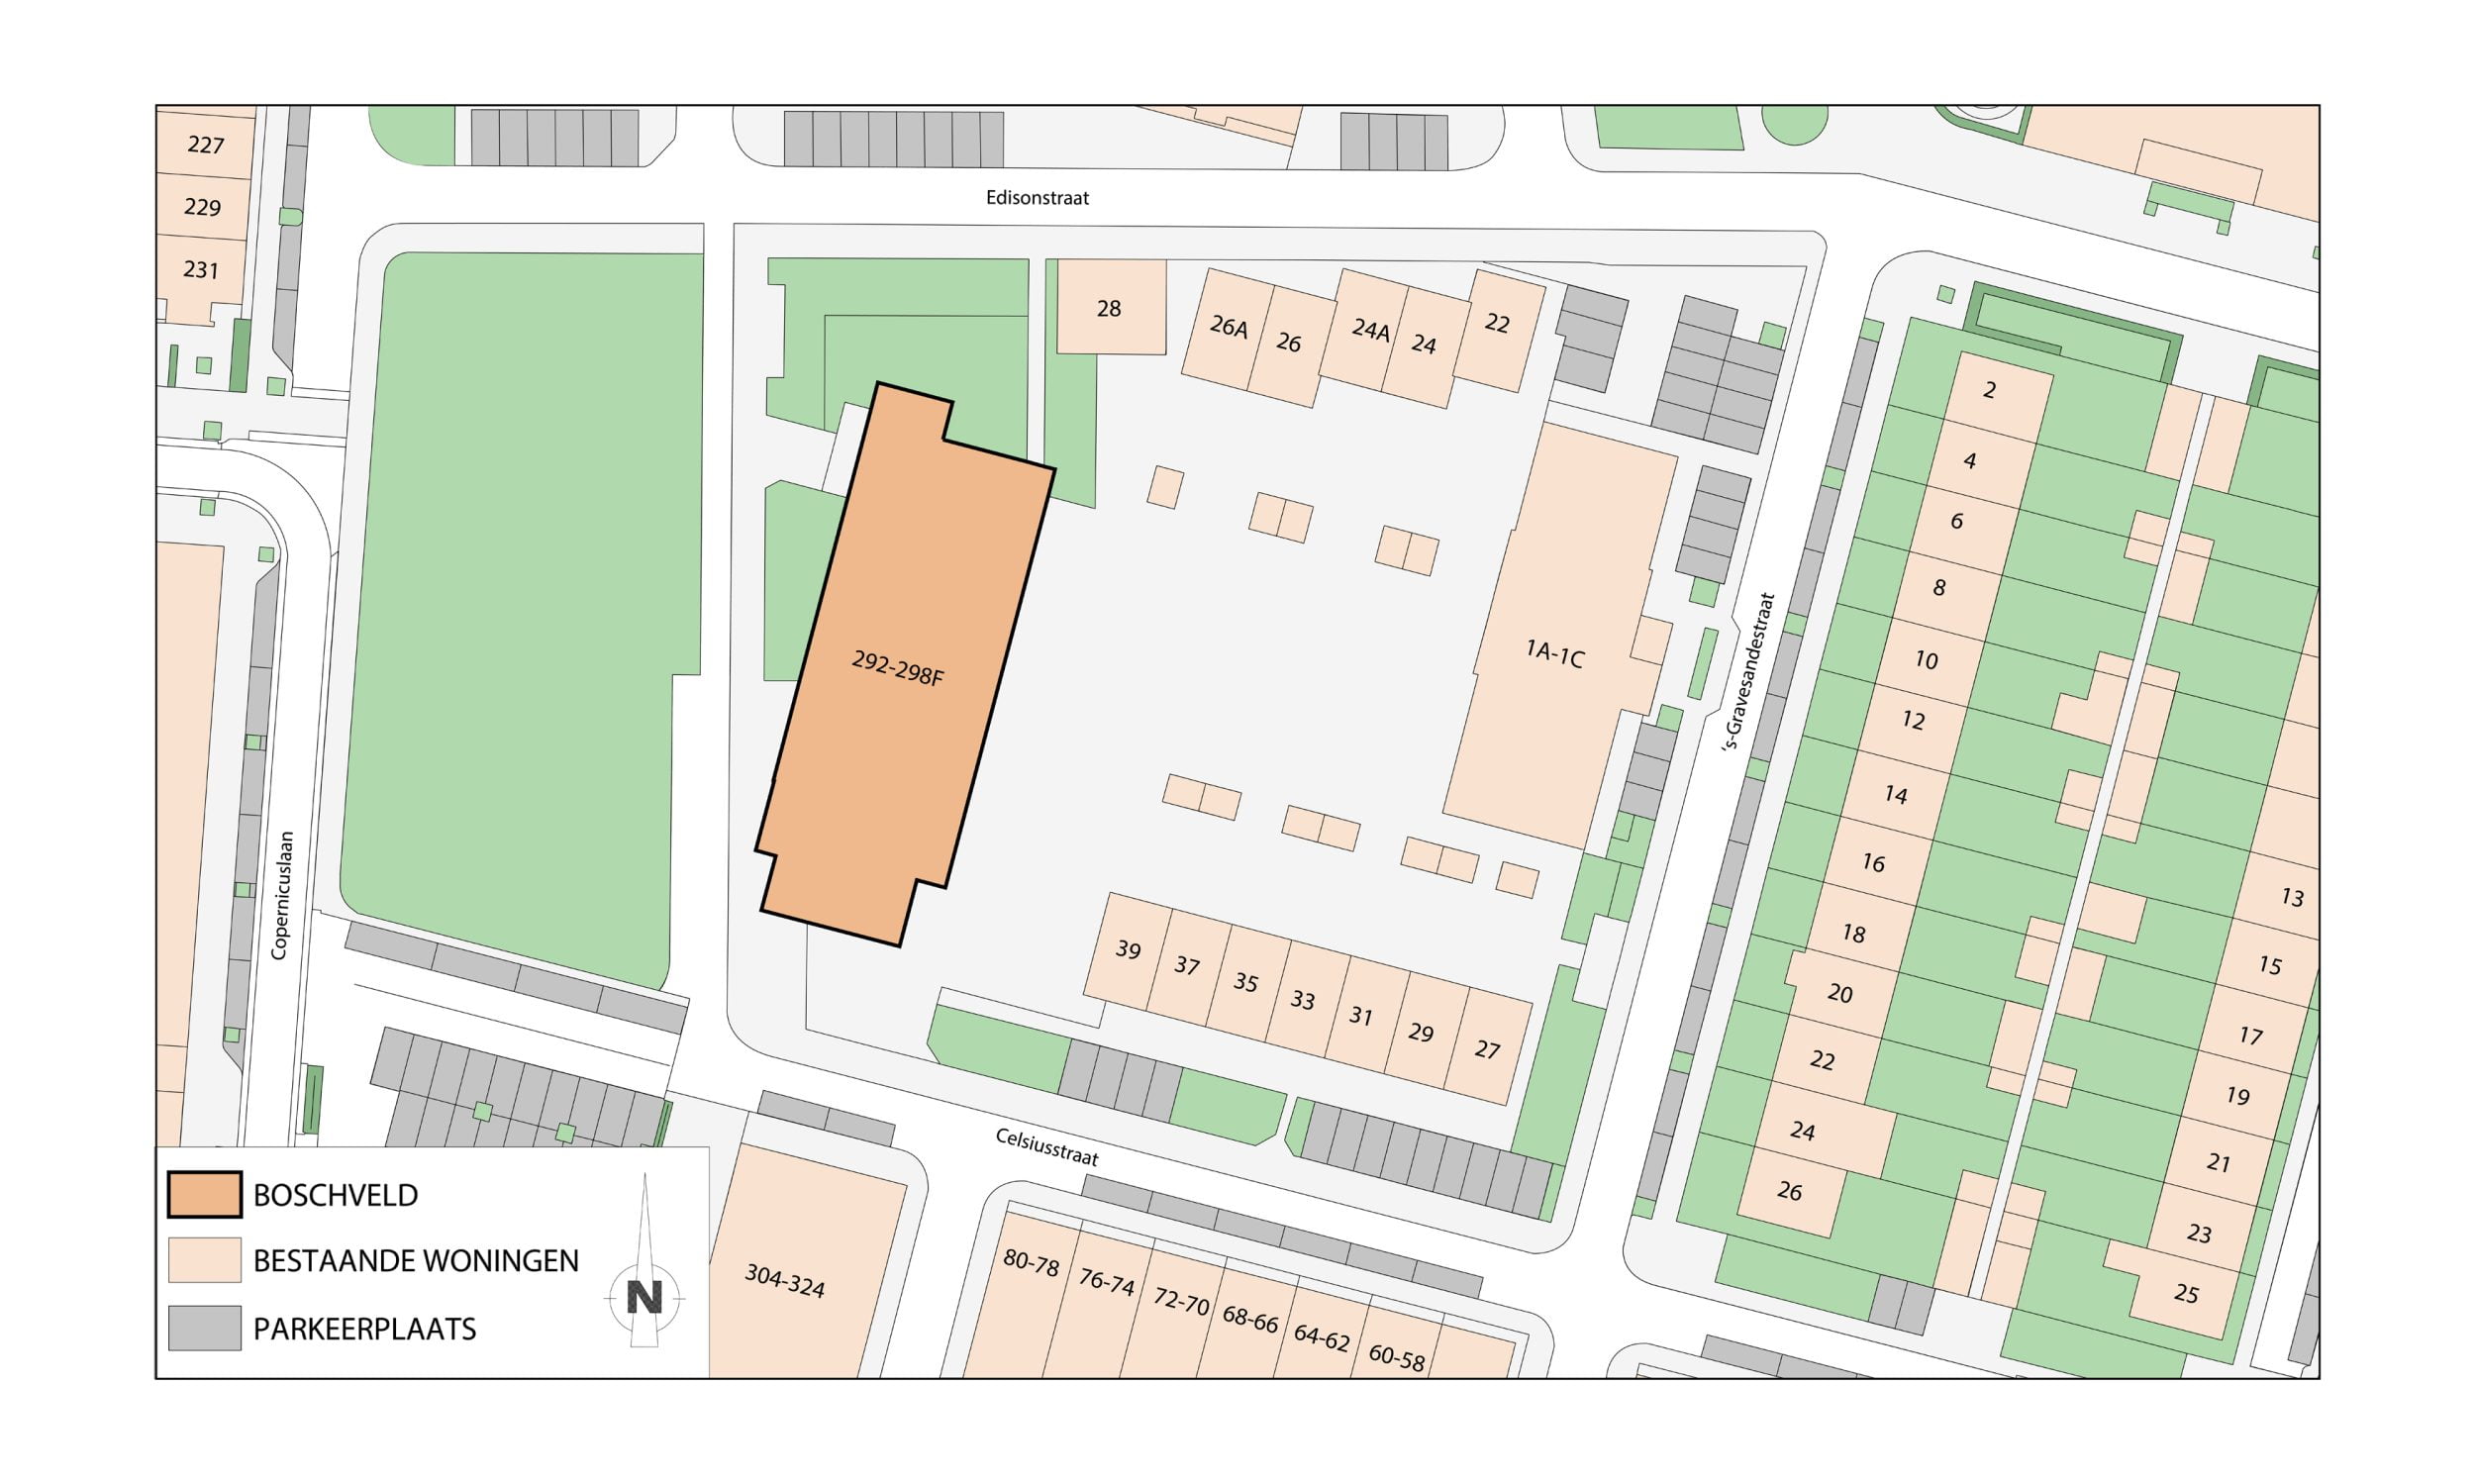 Een Plattegronden met locaties van gebouwen en parkeerplaatsen.